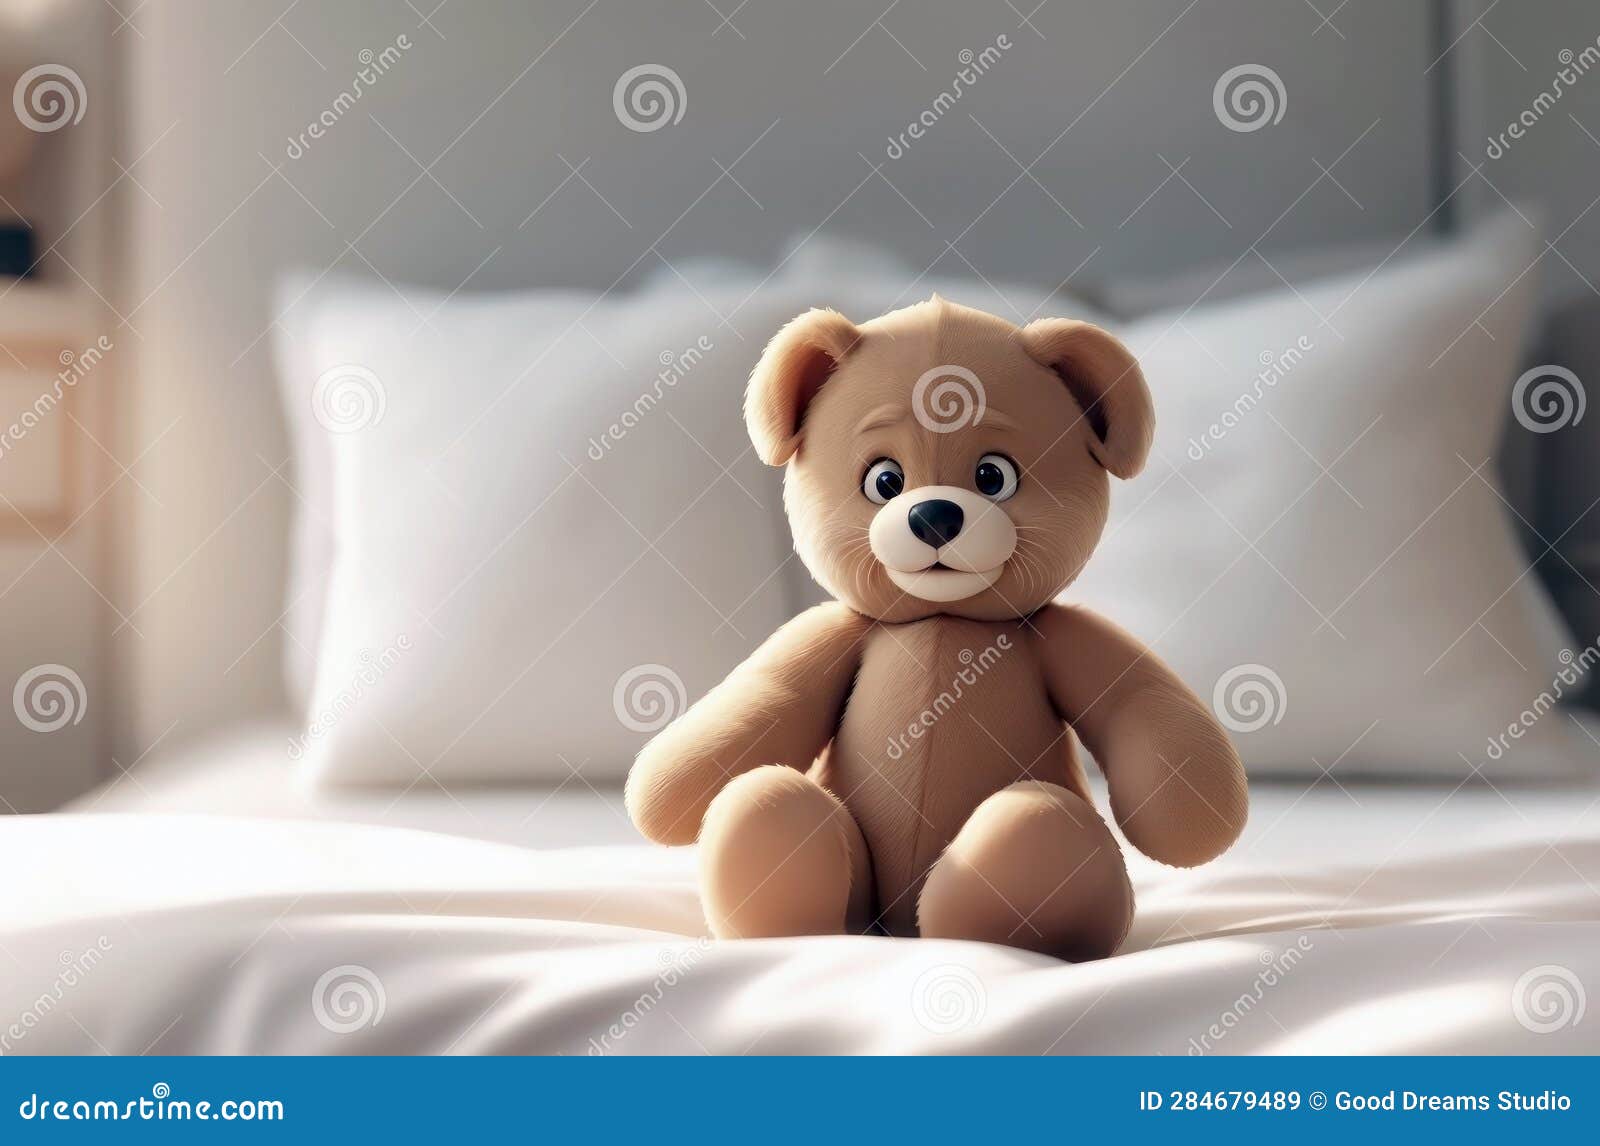 3d cartoon style. plush teddy bear. collectable teddy bear on the bed